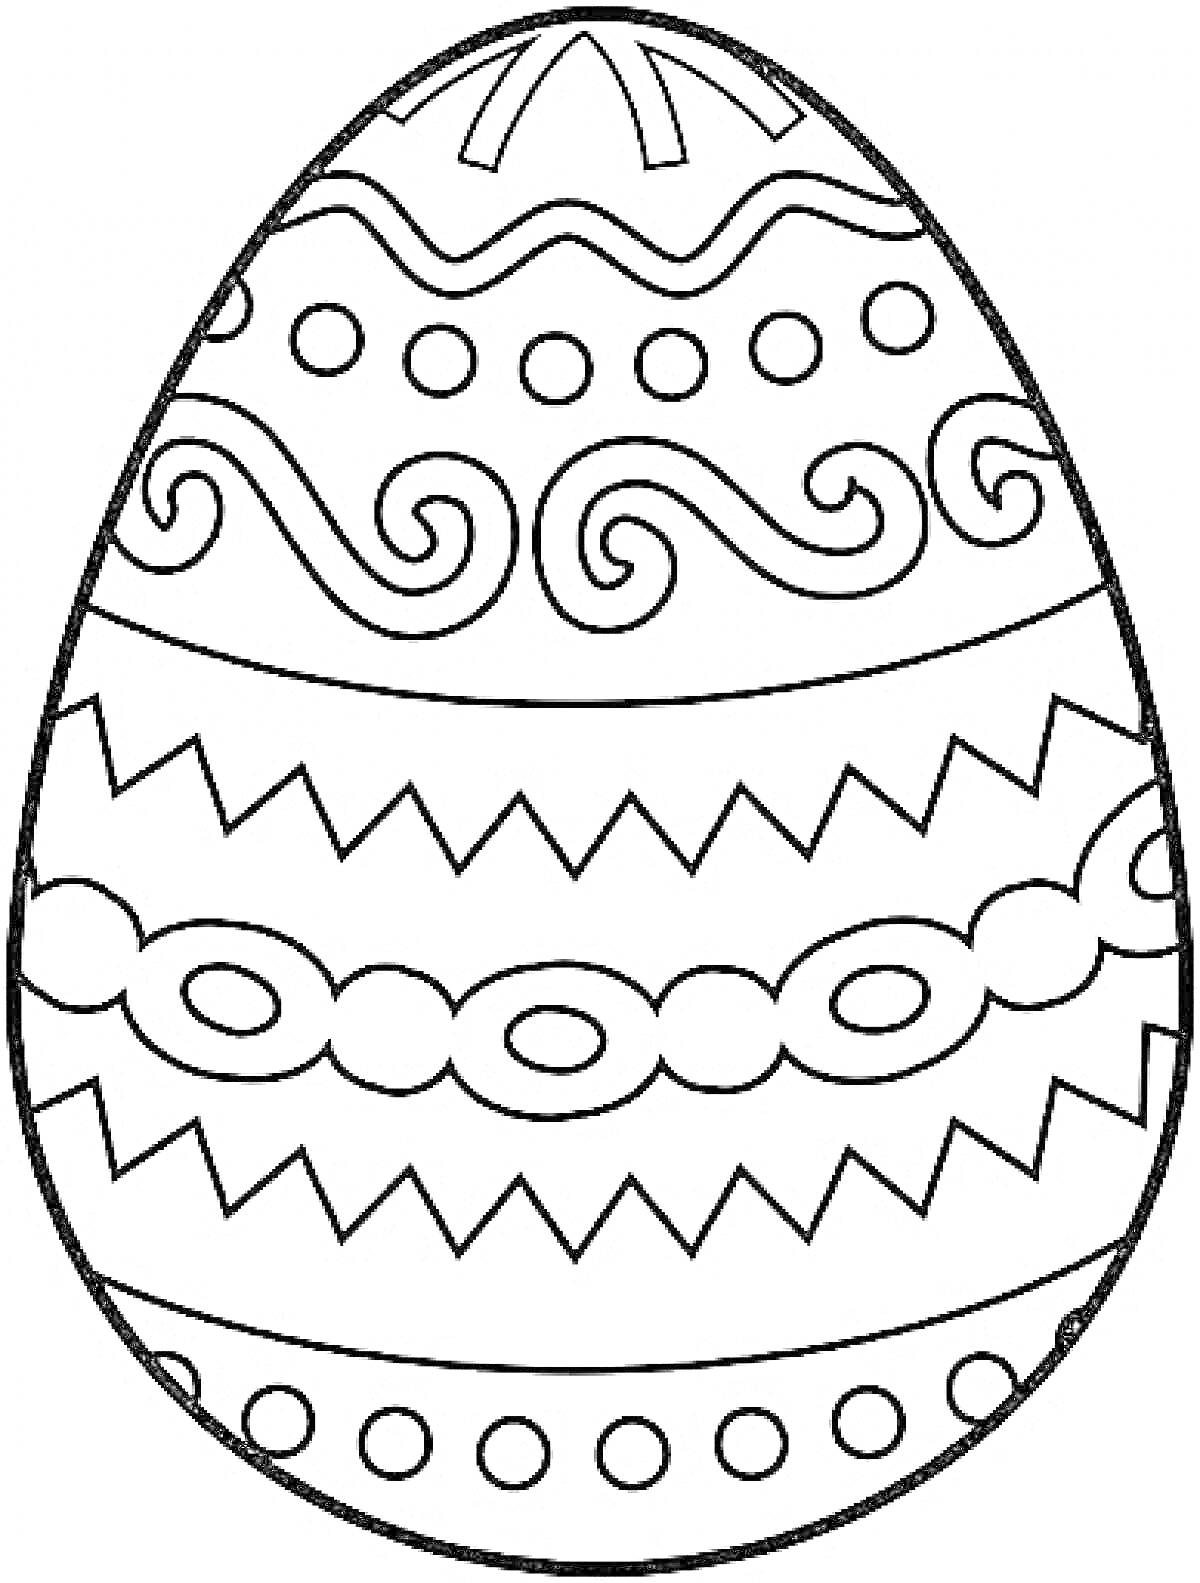 Раскраска Пасхальное яйцо с волнистыми узорами, зигзагами, кружками и овалами